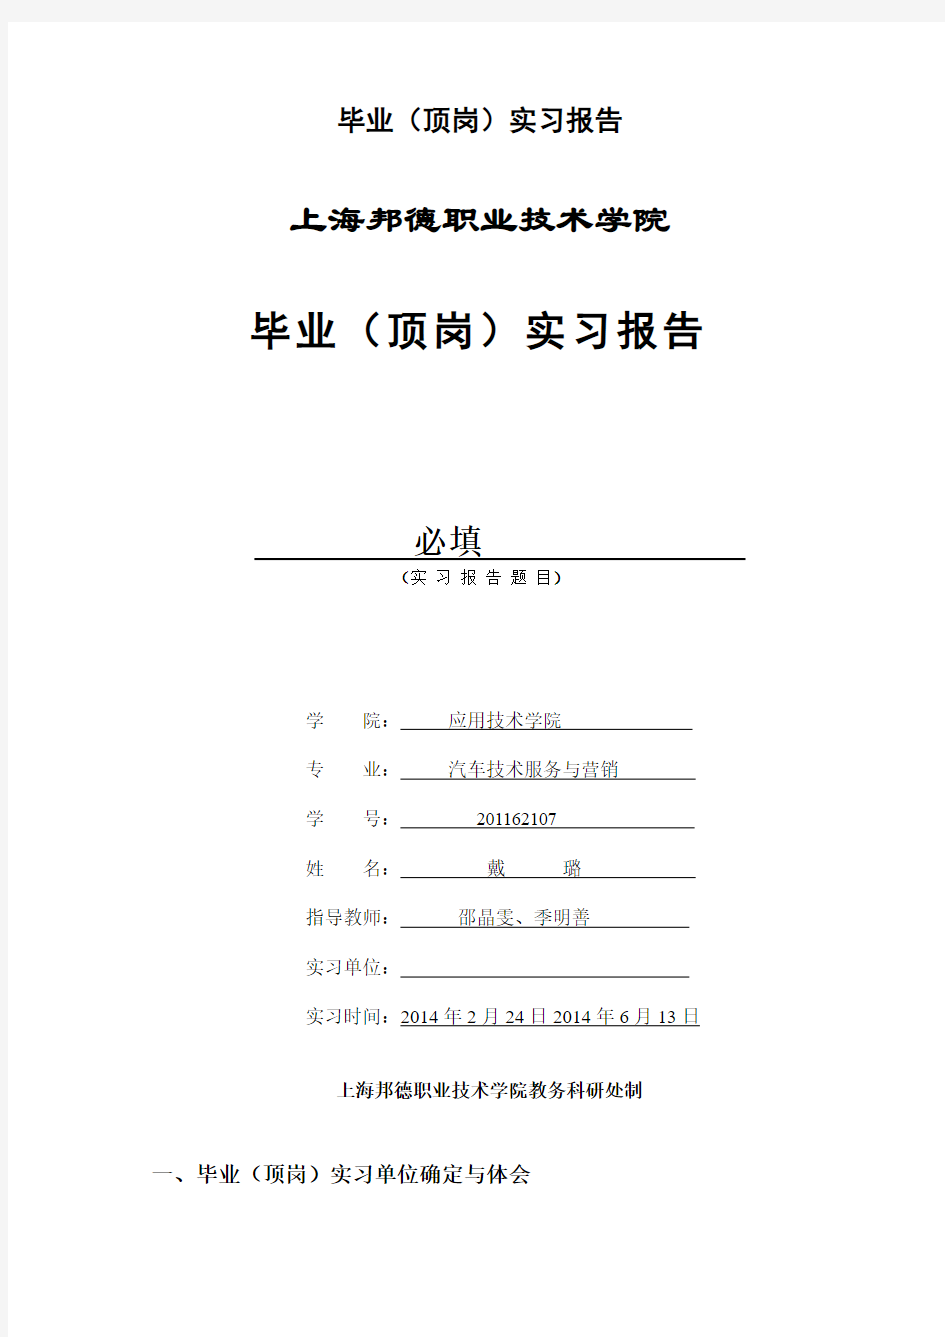 上海邦德职业技术学院 毕业(顶岗)实习报告